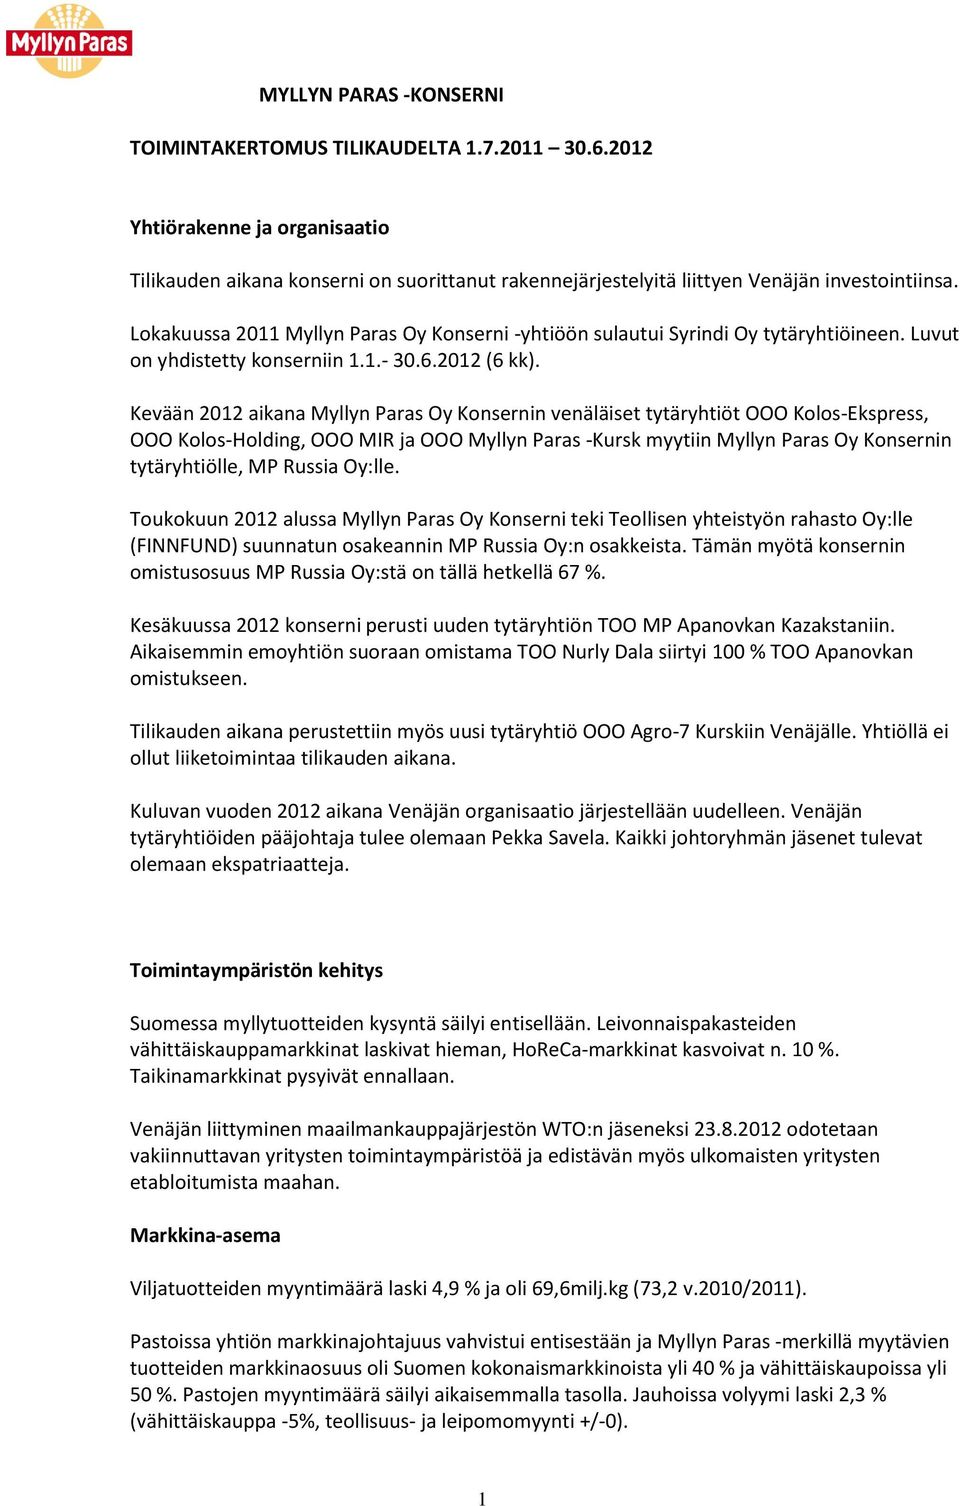 Kevään 2012 aikana Myllyn Paras Oy Konsernin venäläiset tytäryhtiöt OOO Kolos-Ekspress, OOO Kolos-Holding, OOO MIR ja OOO Myllyn Paras -Kursk myytiin Myllyn Paras Oy Konsernin tytäryhtiölle, MP